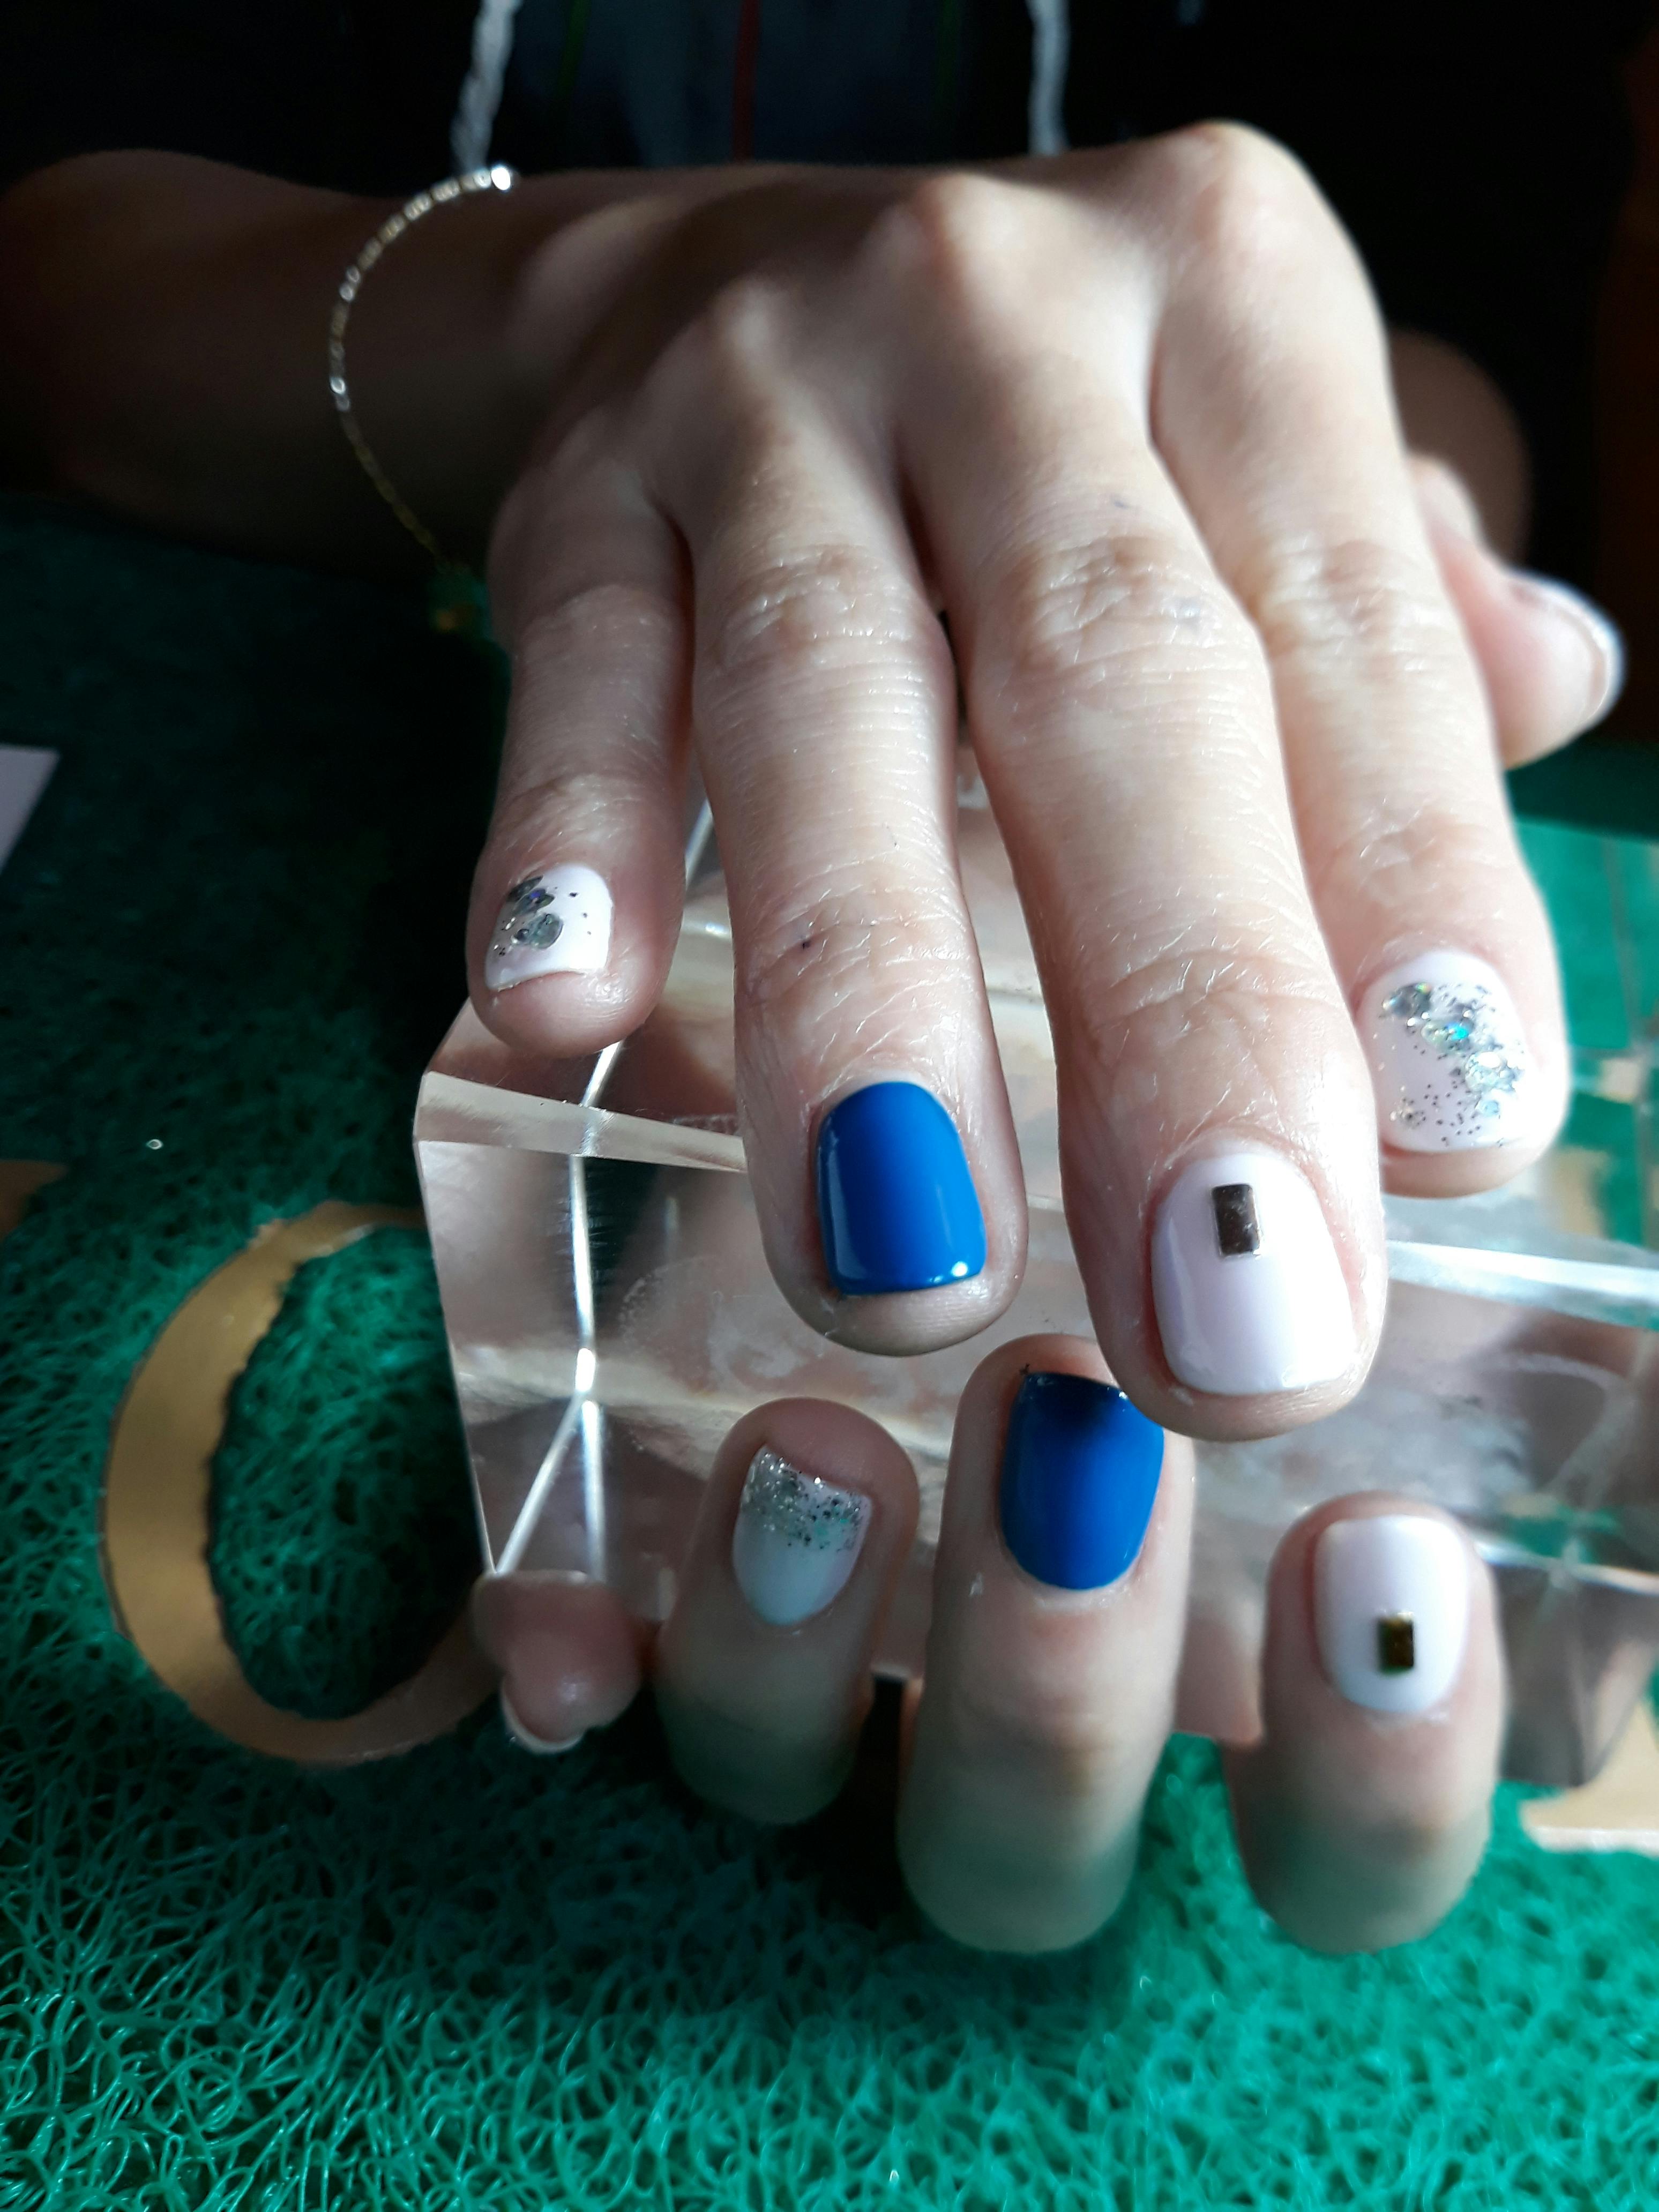 Free stock photo of nail art, Nails nail color